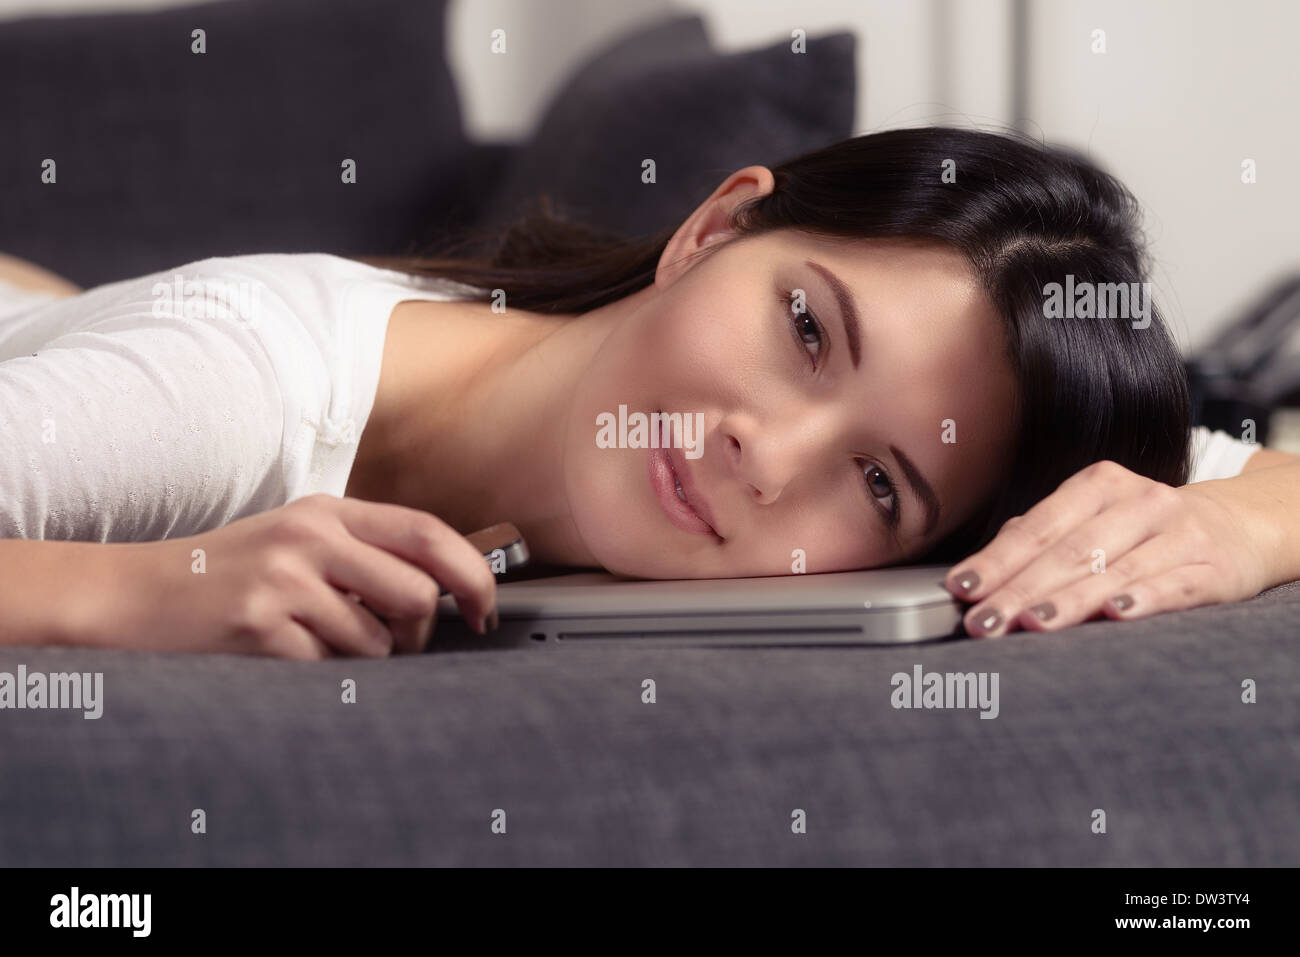 Charmante jeune femme avec sa tête placée sur un ordinateur portable smiling at the camera Banque D'Images